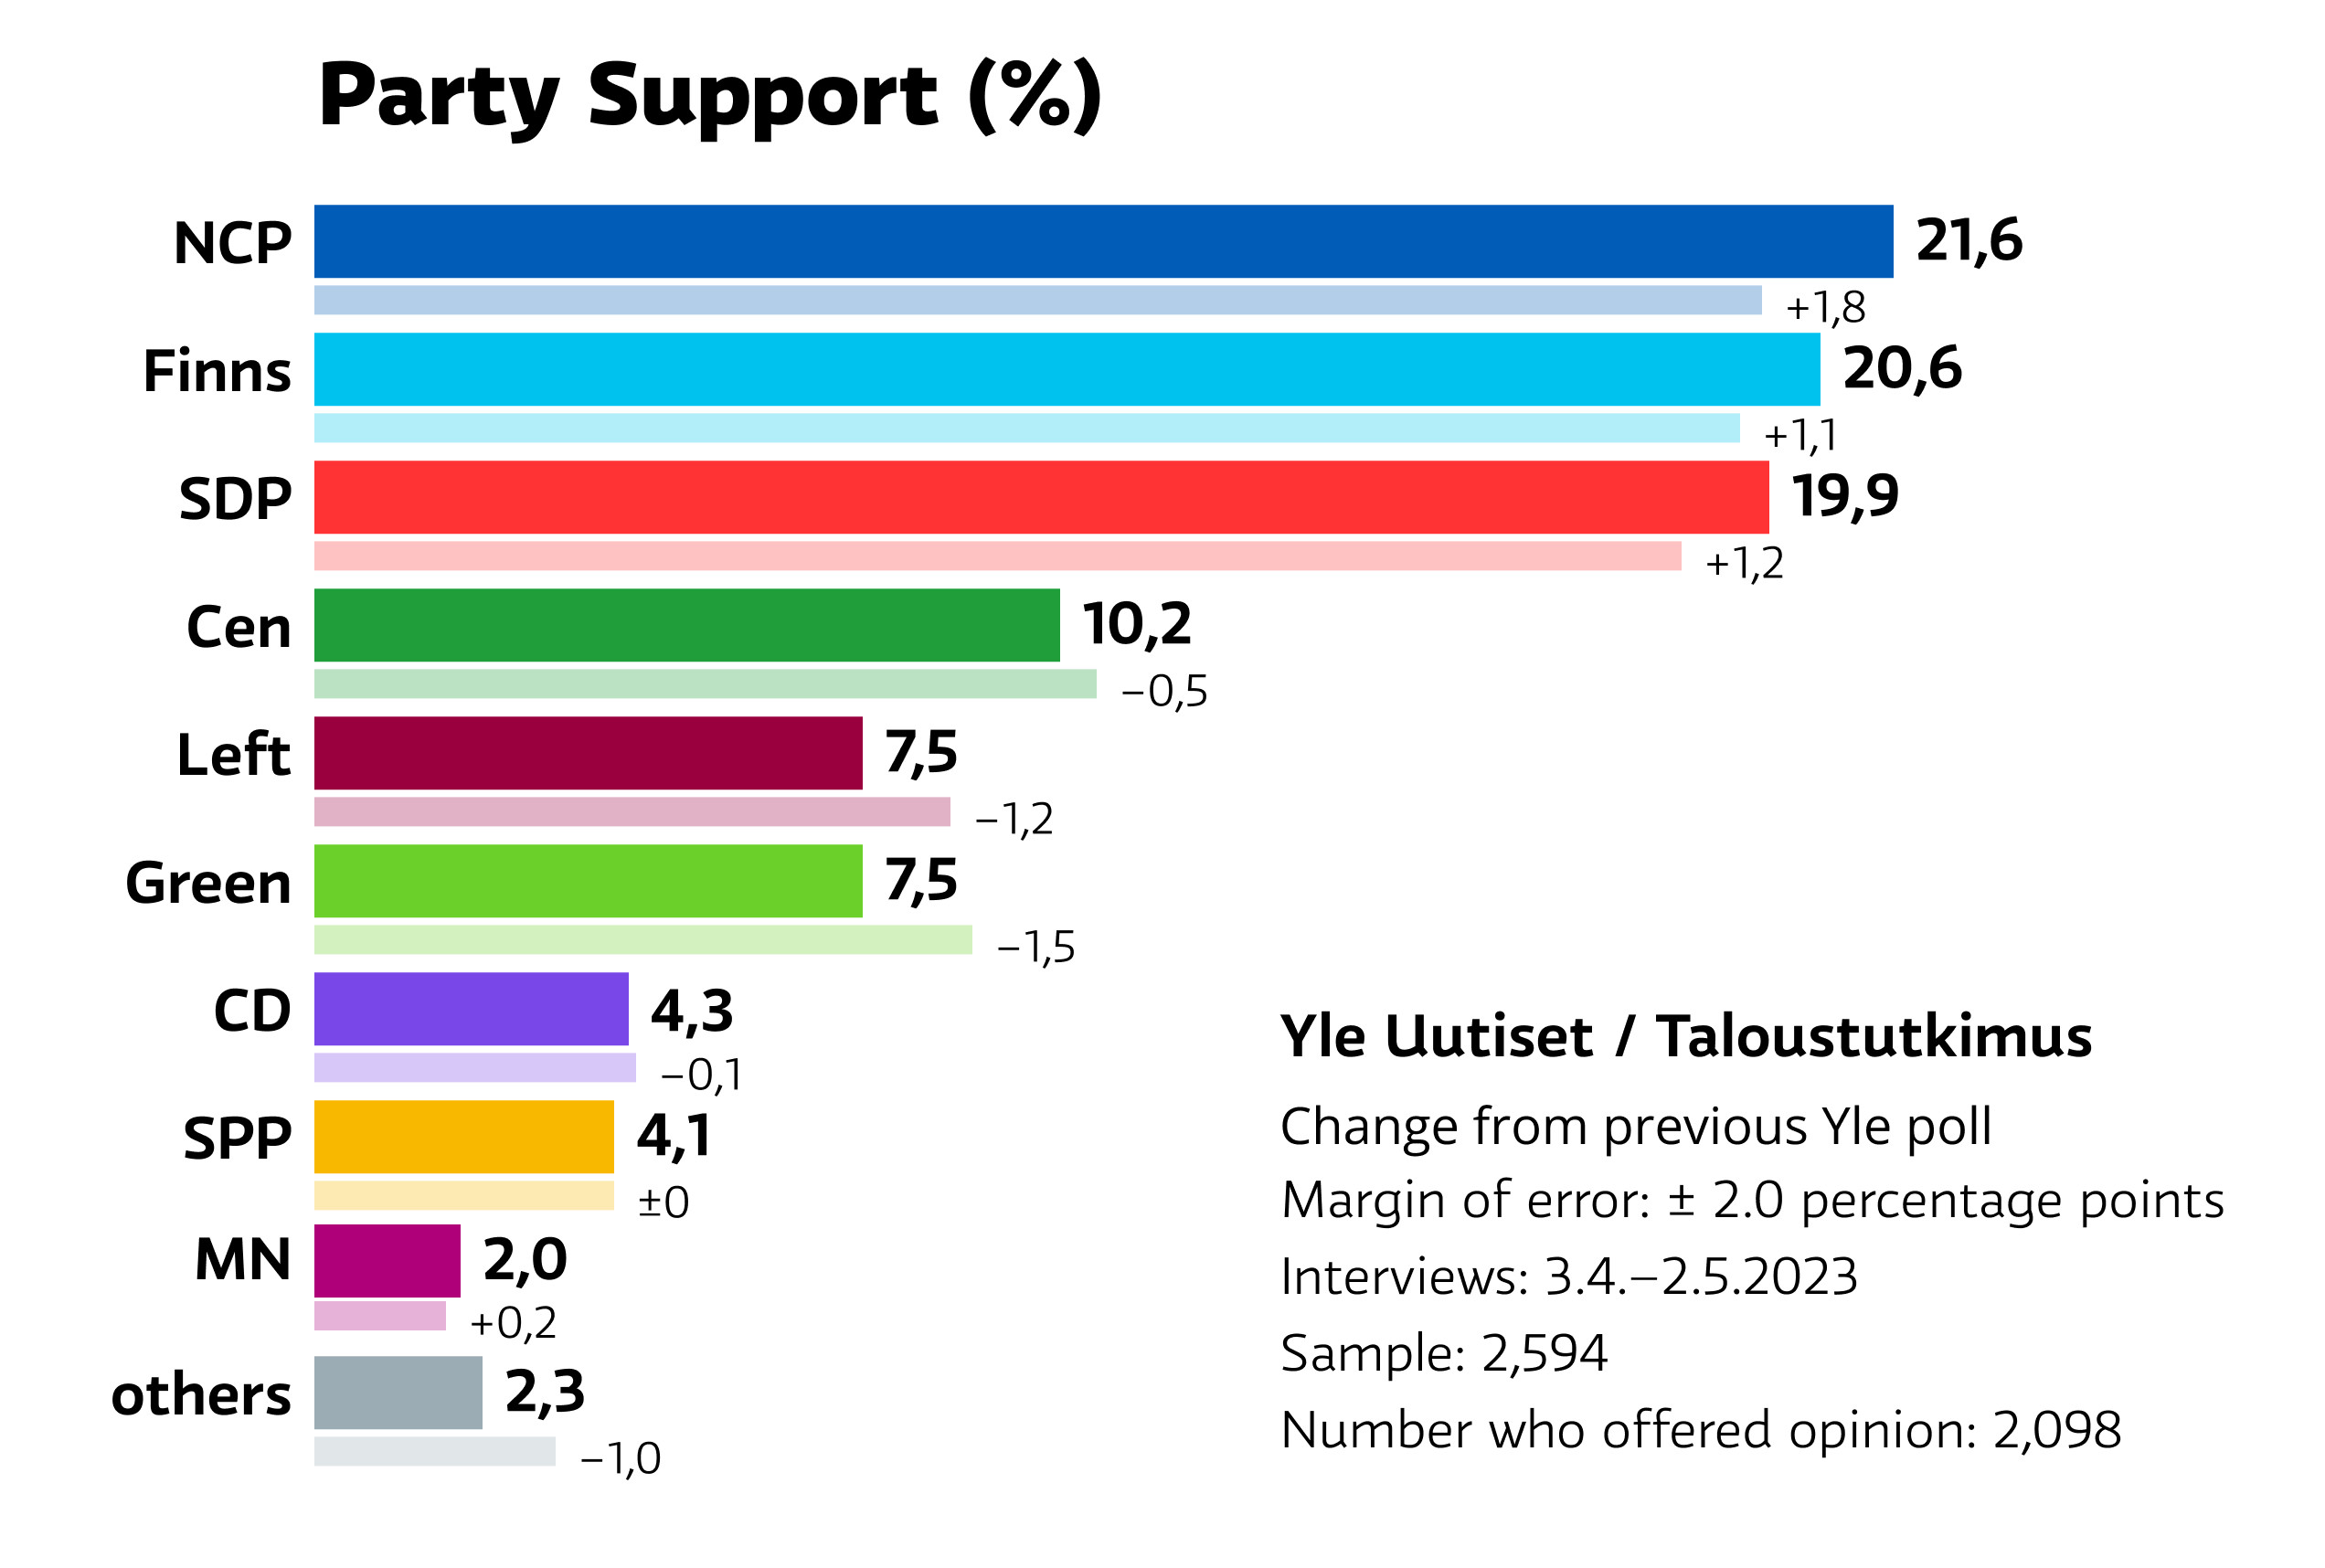 Yles jüngste Umfrage zur Parteiunterstützung spiegelt die Ergebnisse der Parlamentswahlen wider